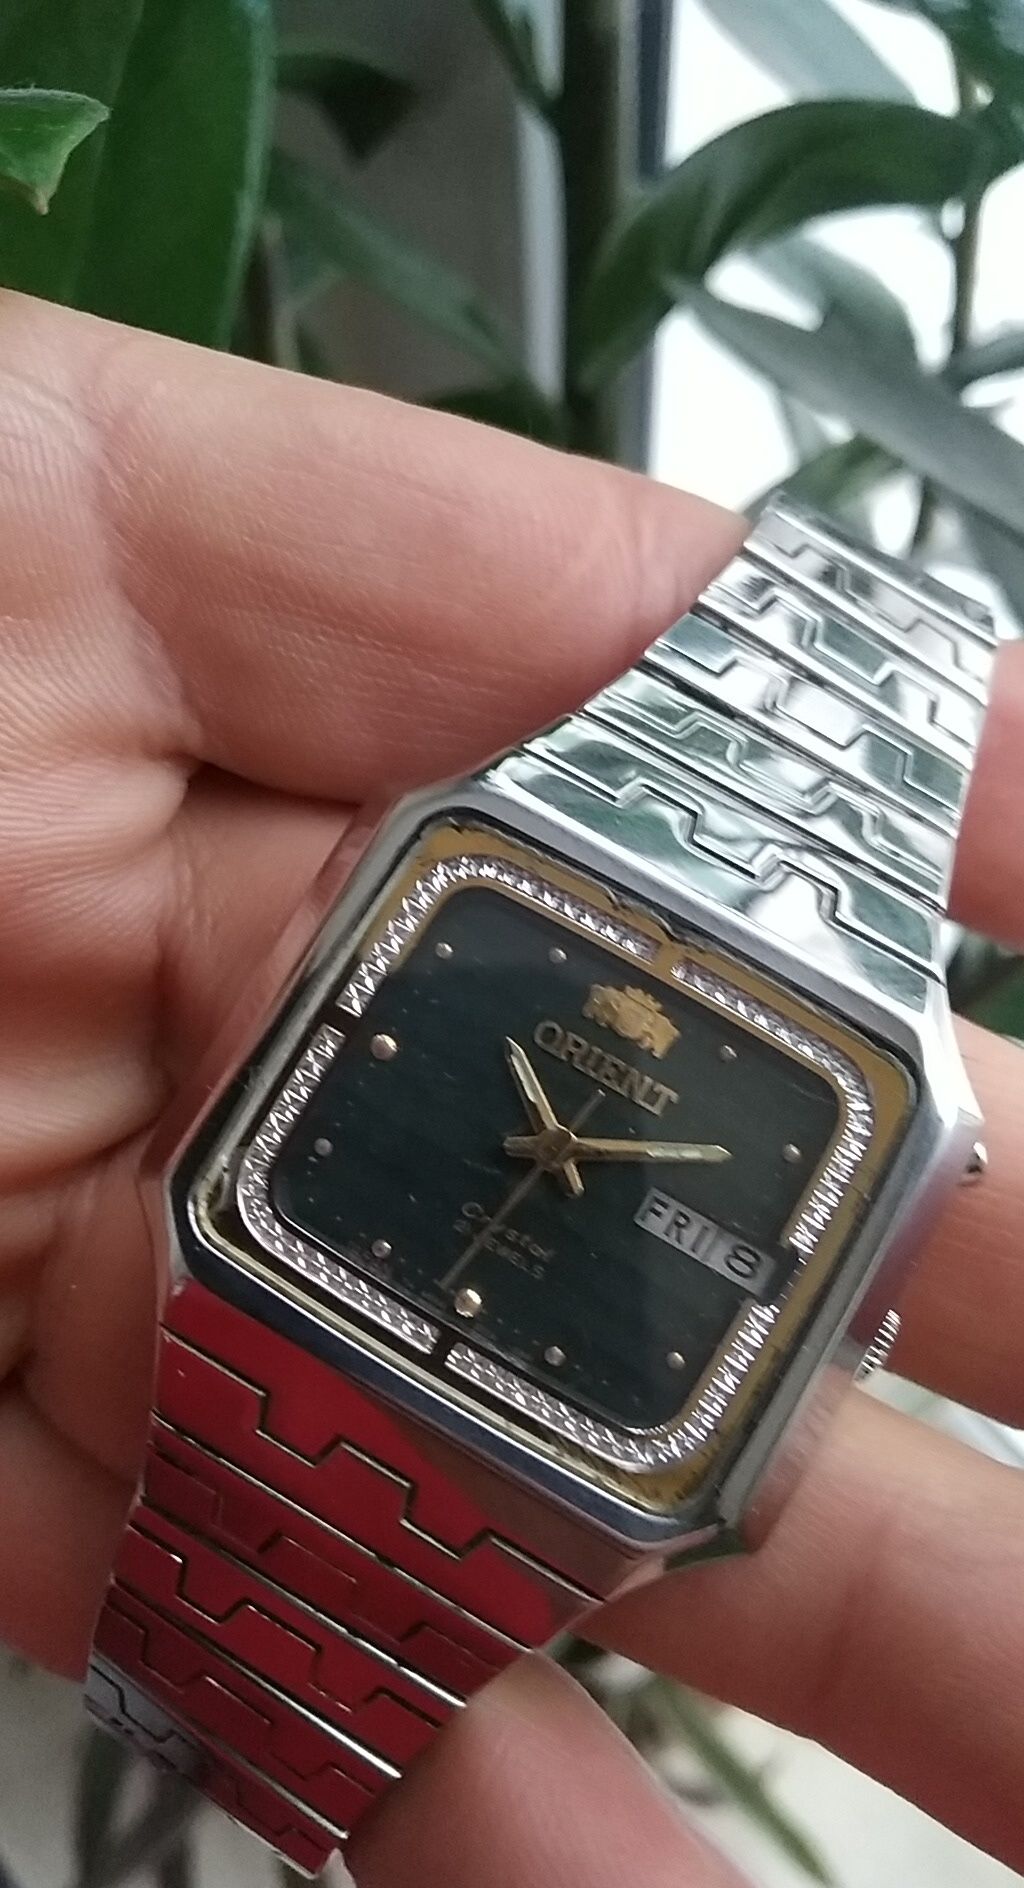 Часы Япония Ориент Фреза 21камень периода СССР